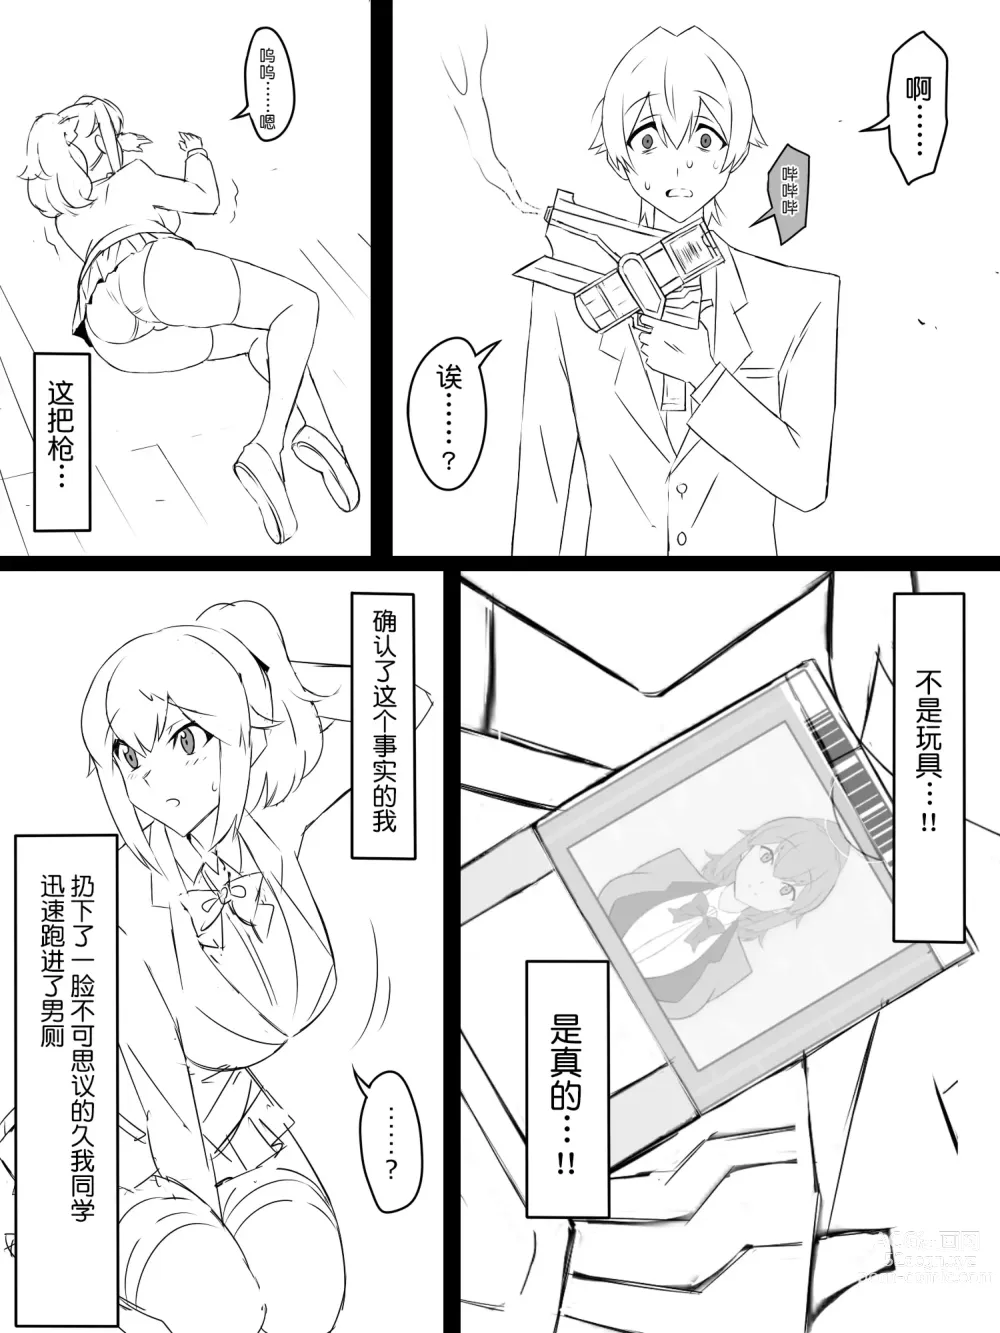 Page 6 of doujinshi Shoukanjuu DX DeliHealizer